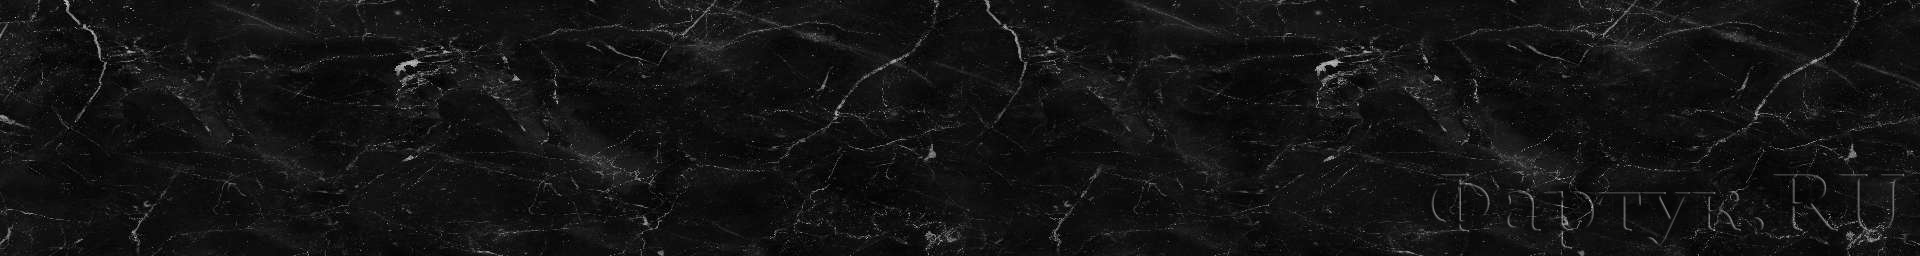 Черный мраморный узорчатый текстурный фон